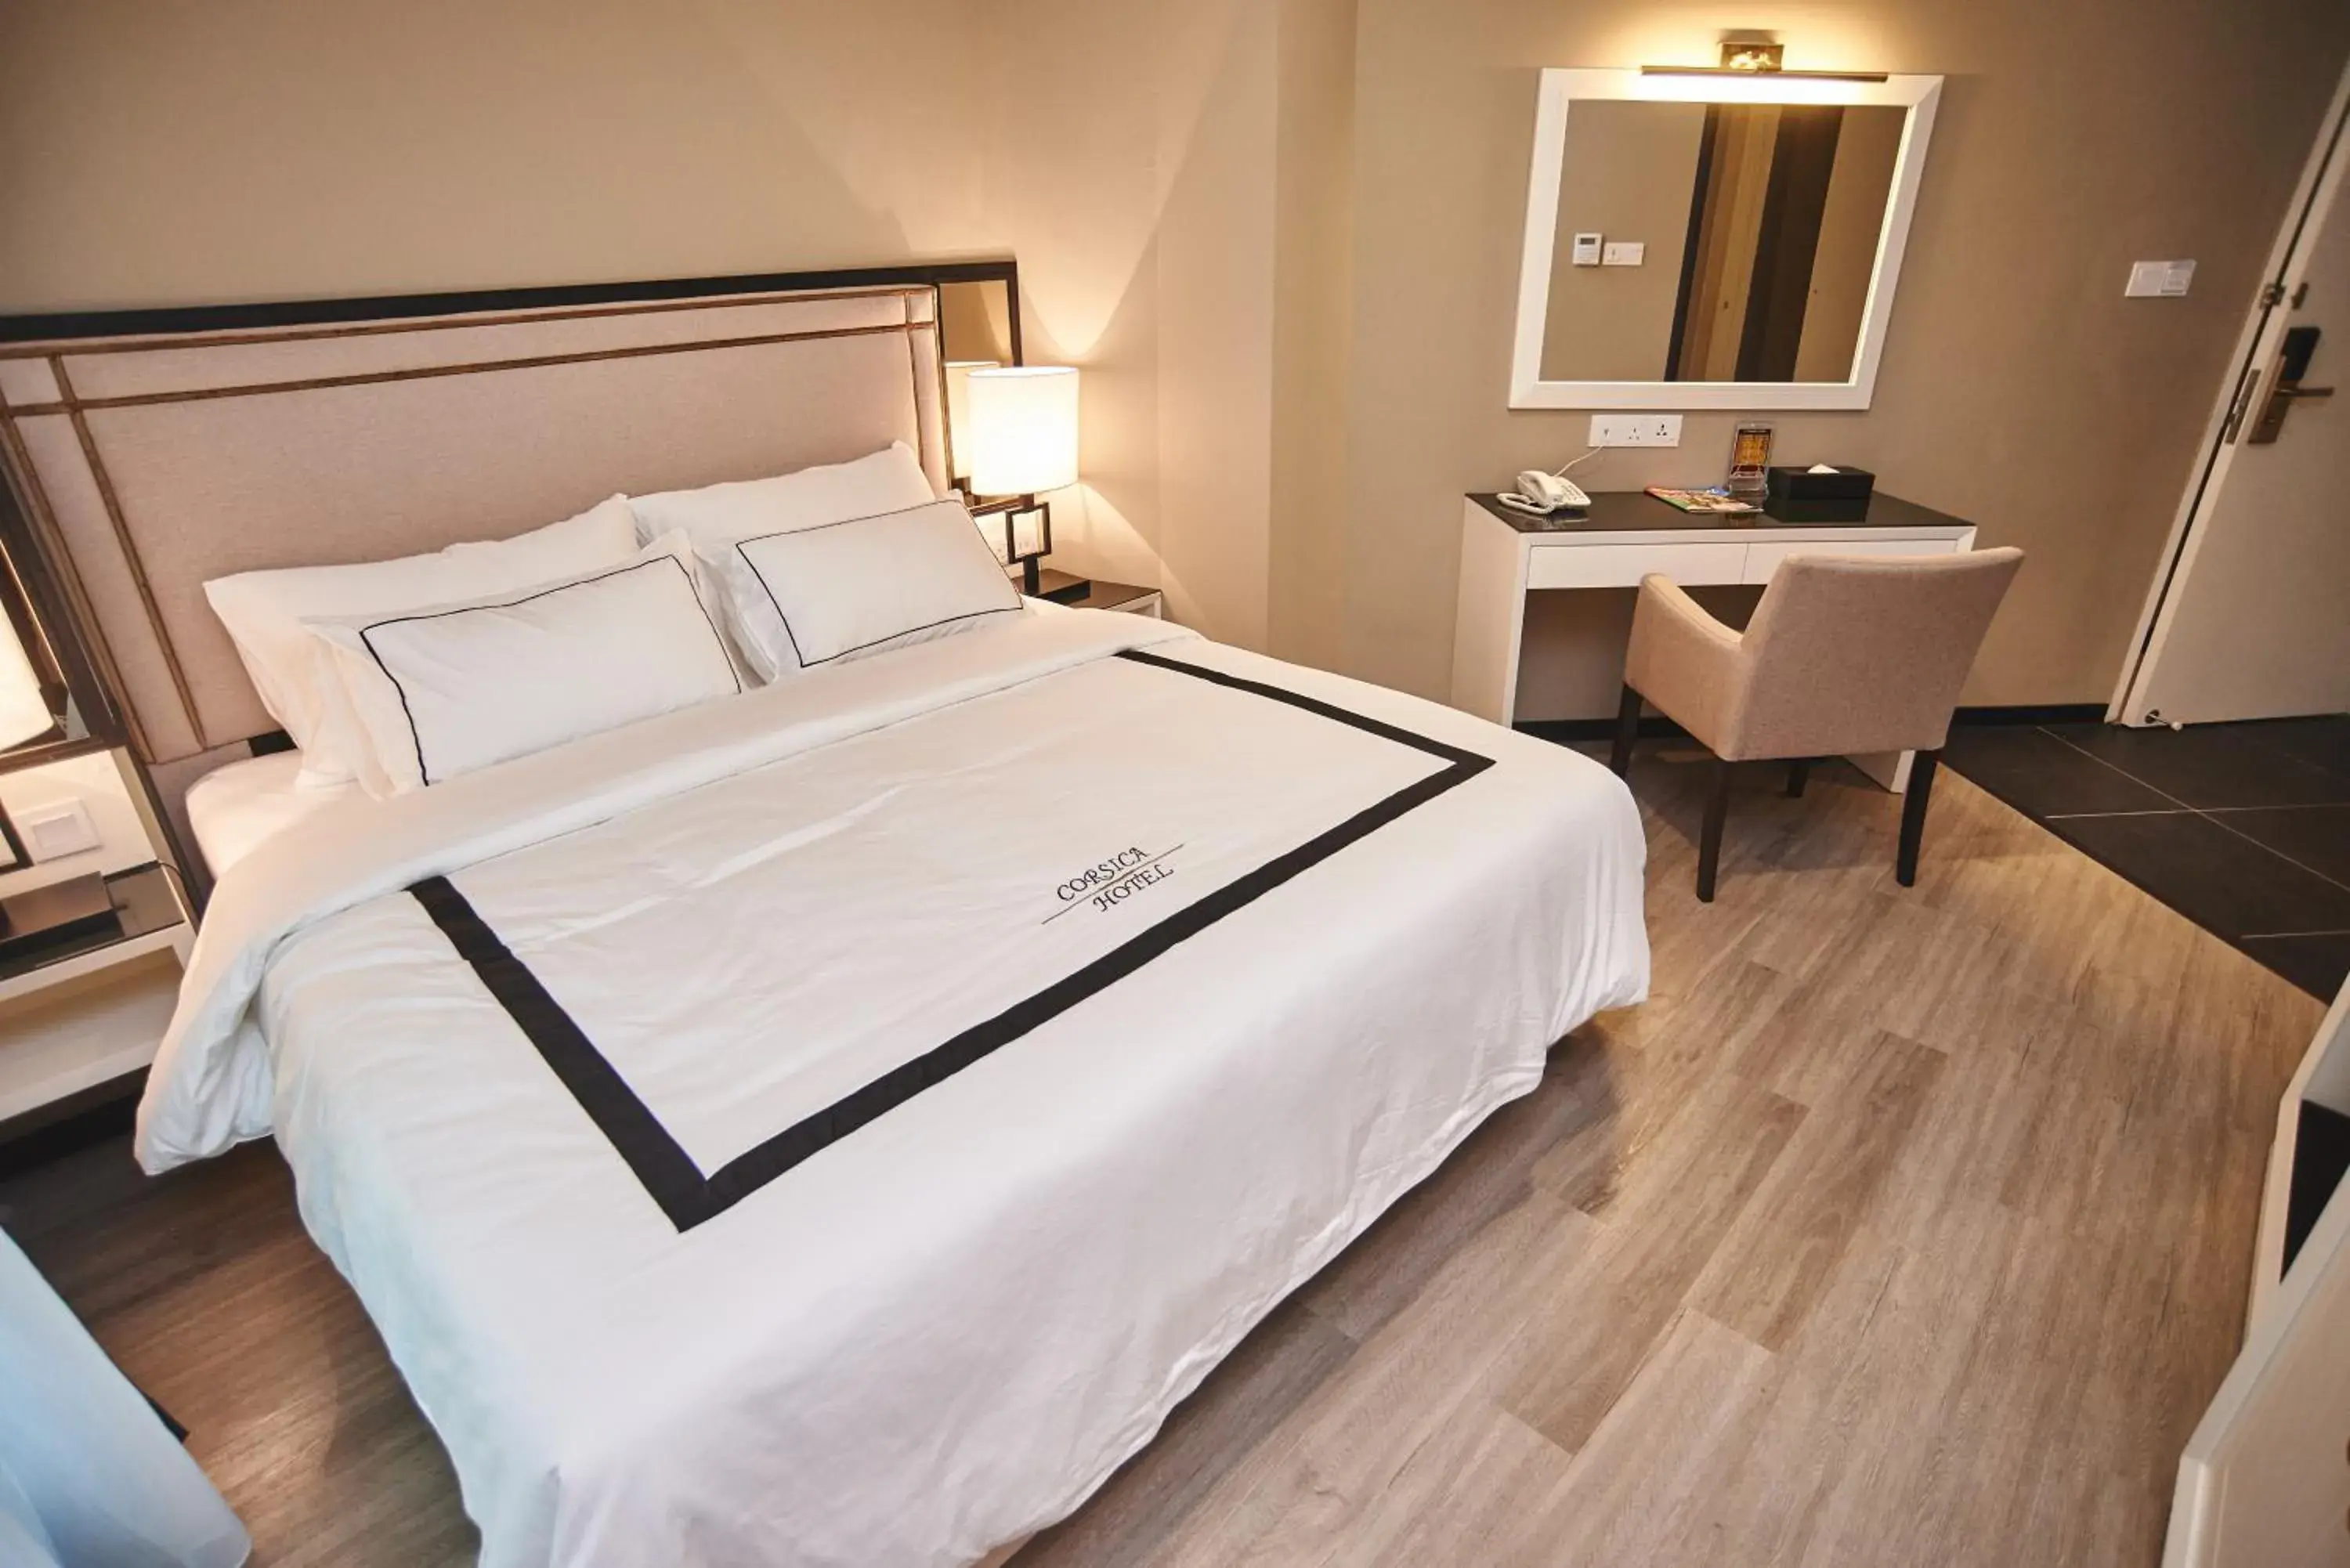 Bedroom, Room Photo in Corsica Hotel